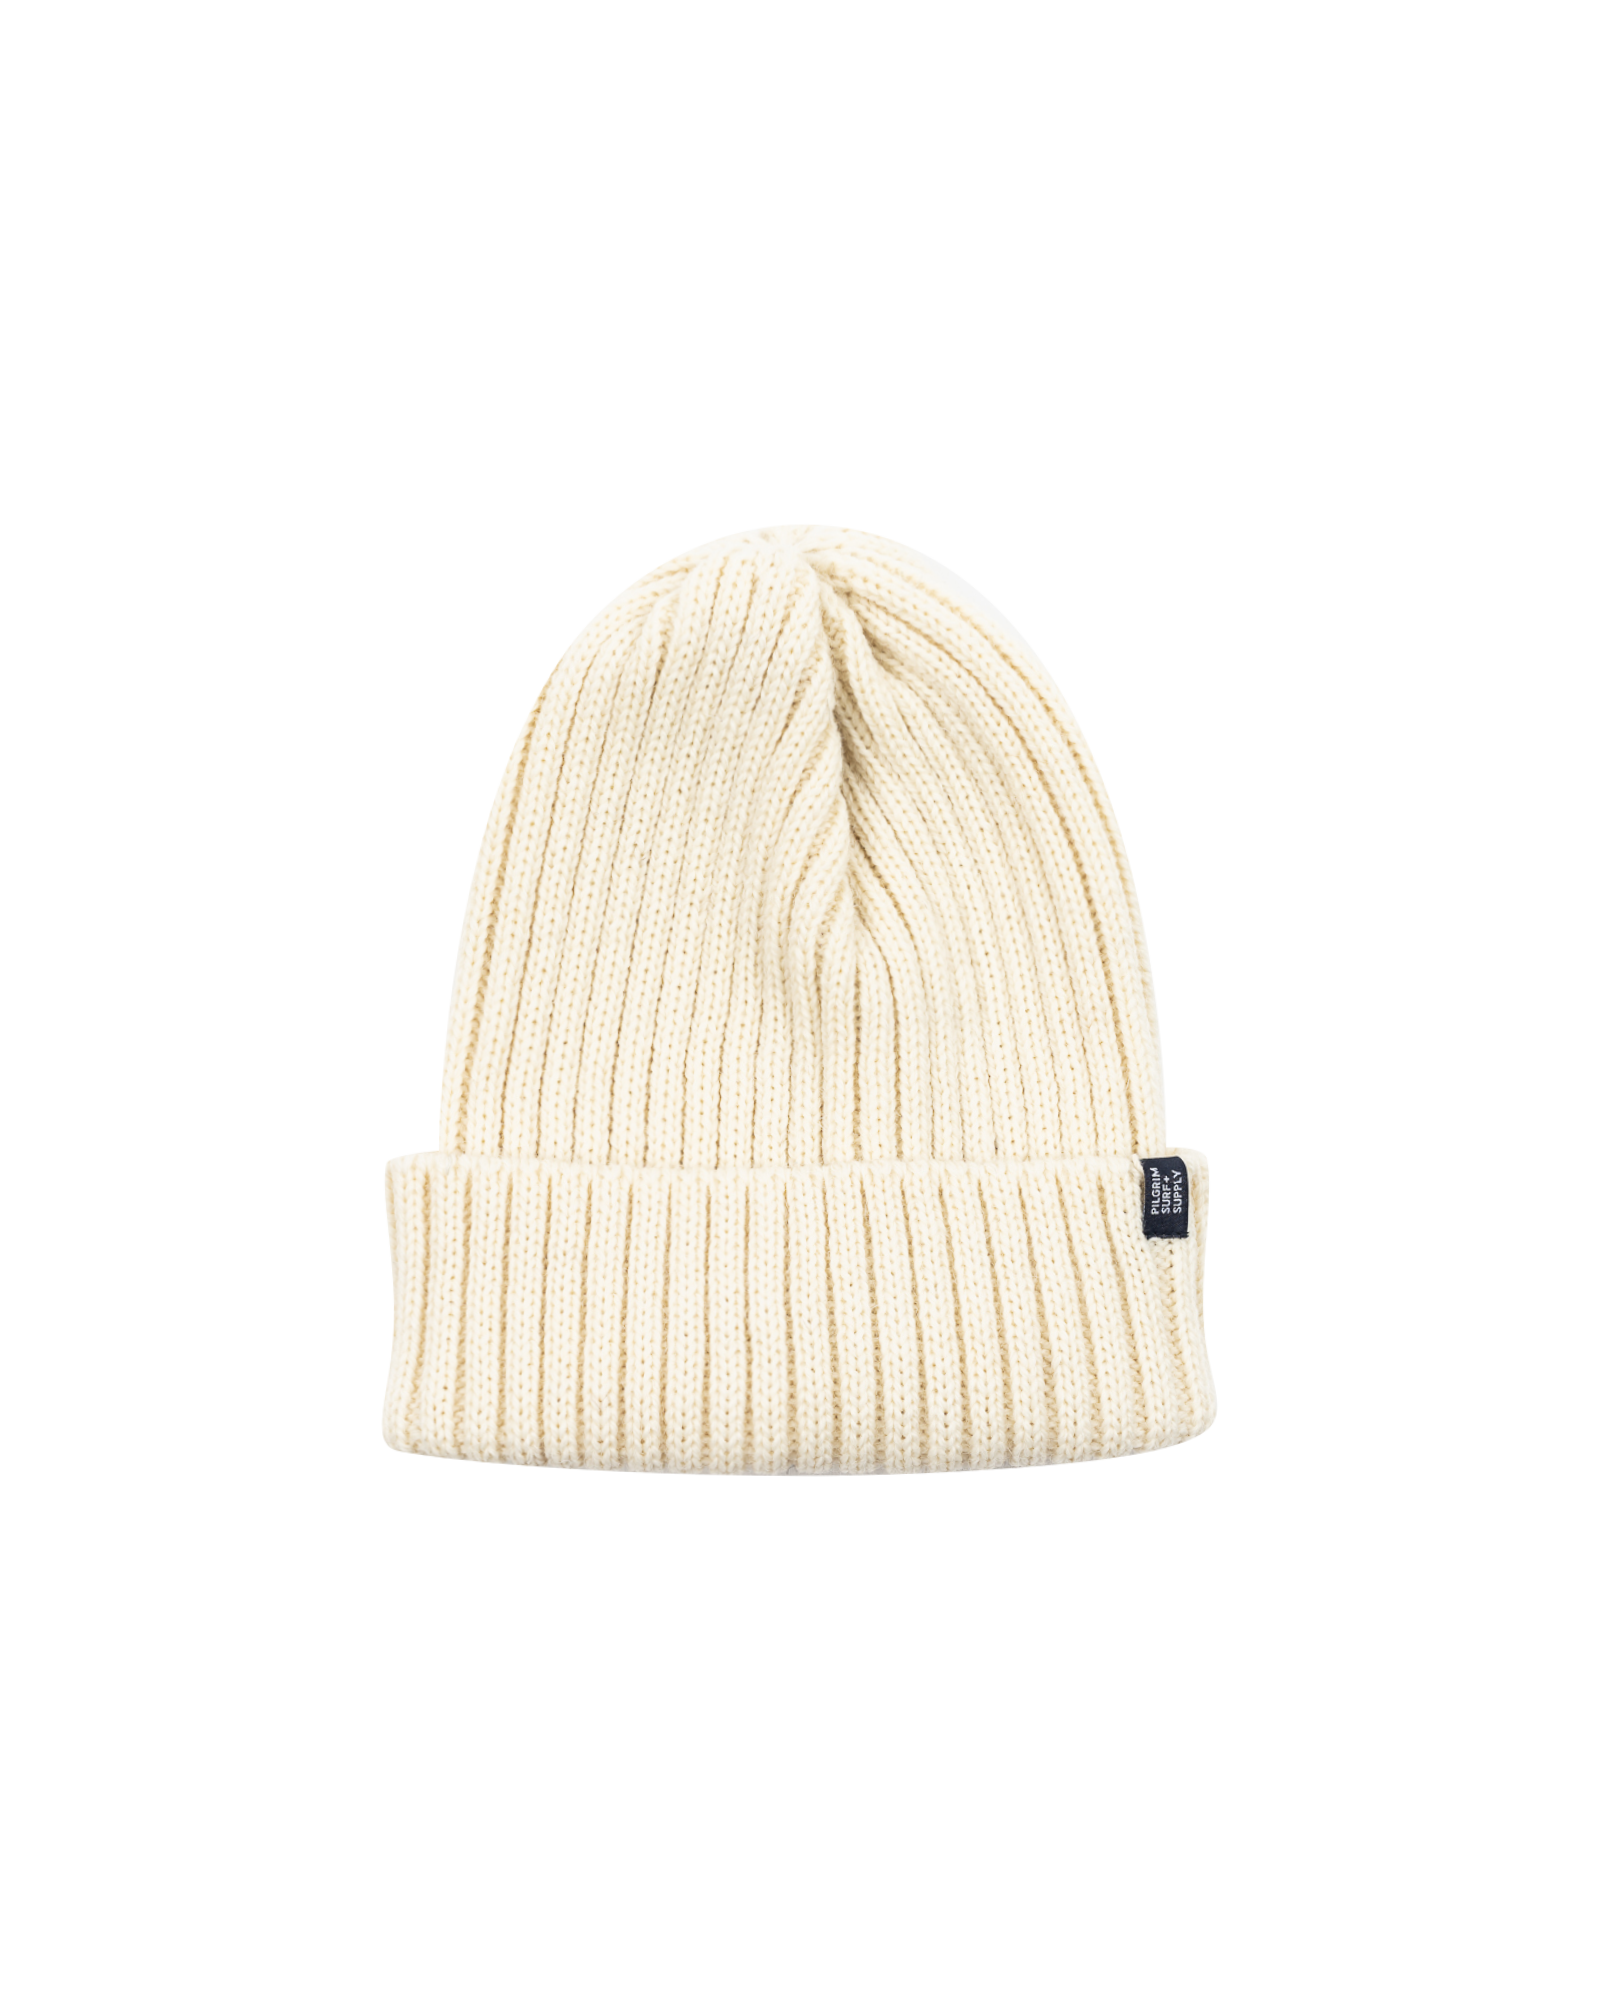 Pilgrim Surf + Supply - Hat - Wool Rib - Beanie - White